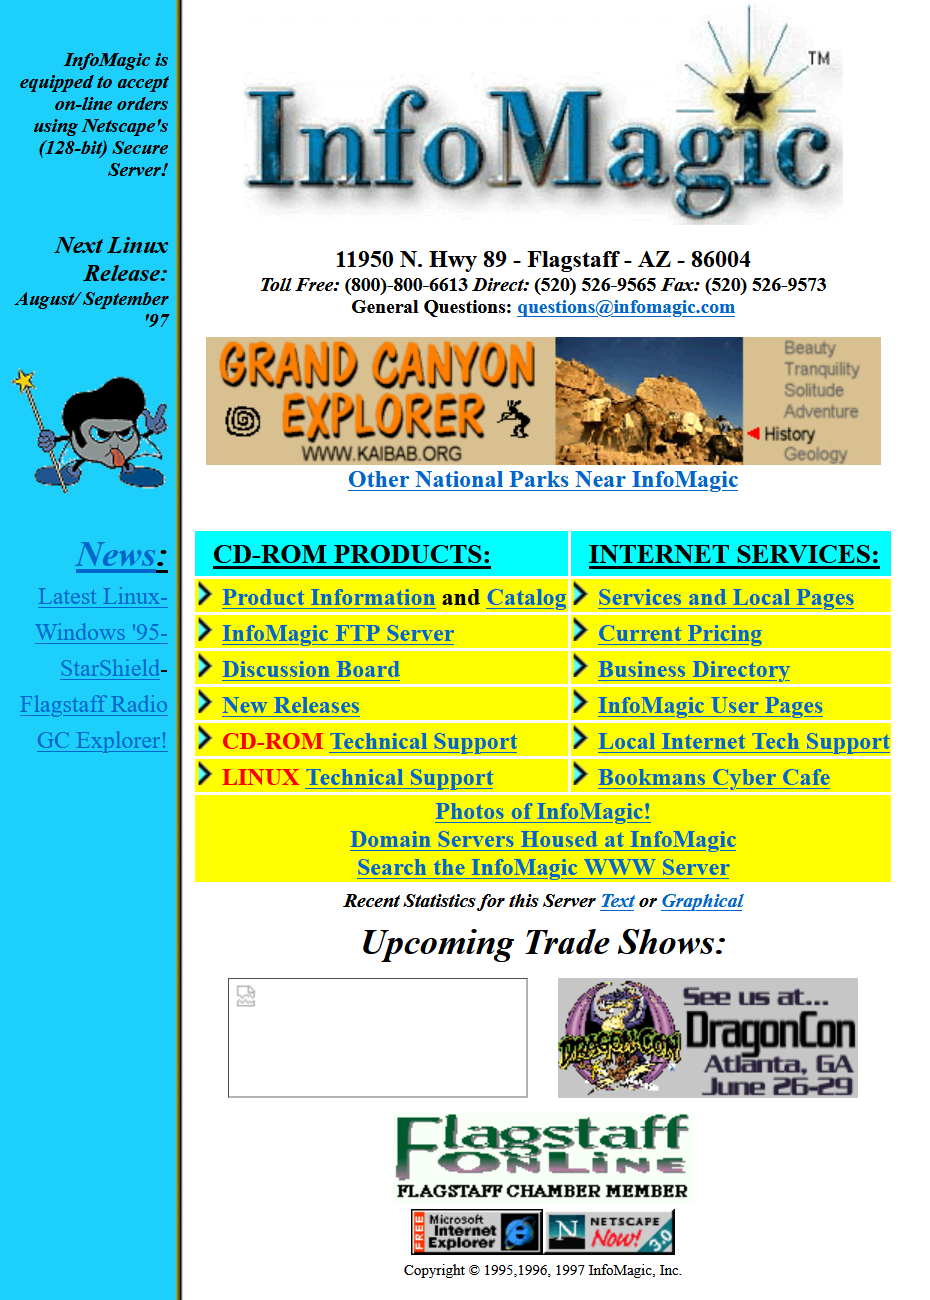 InfoMagic's Site, June 1997